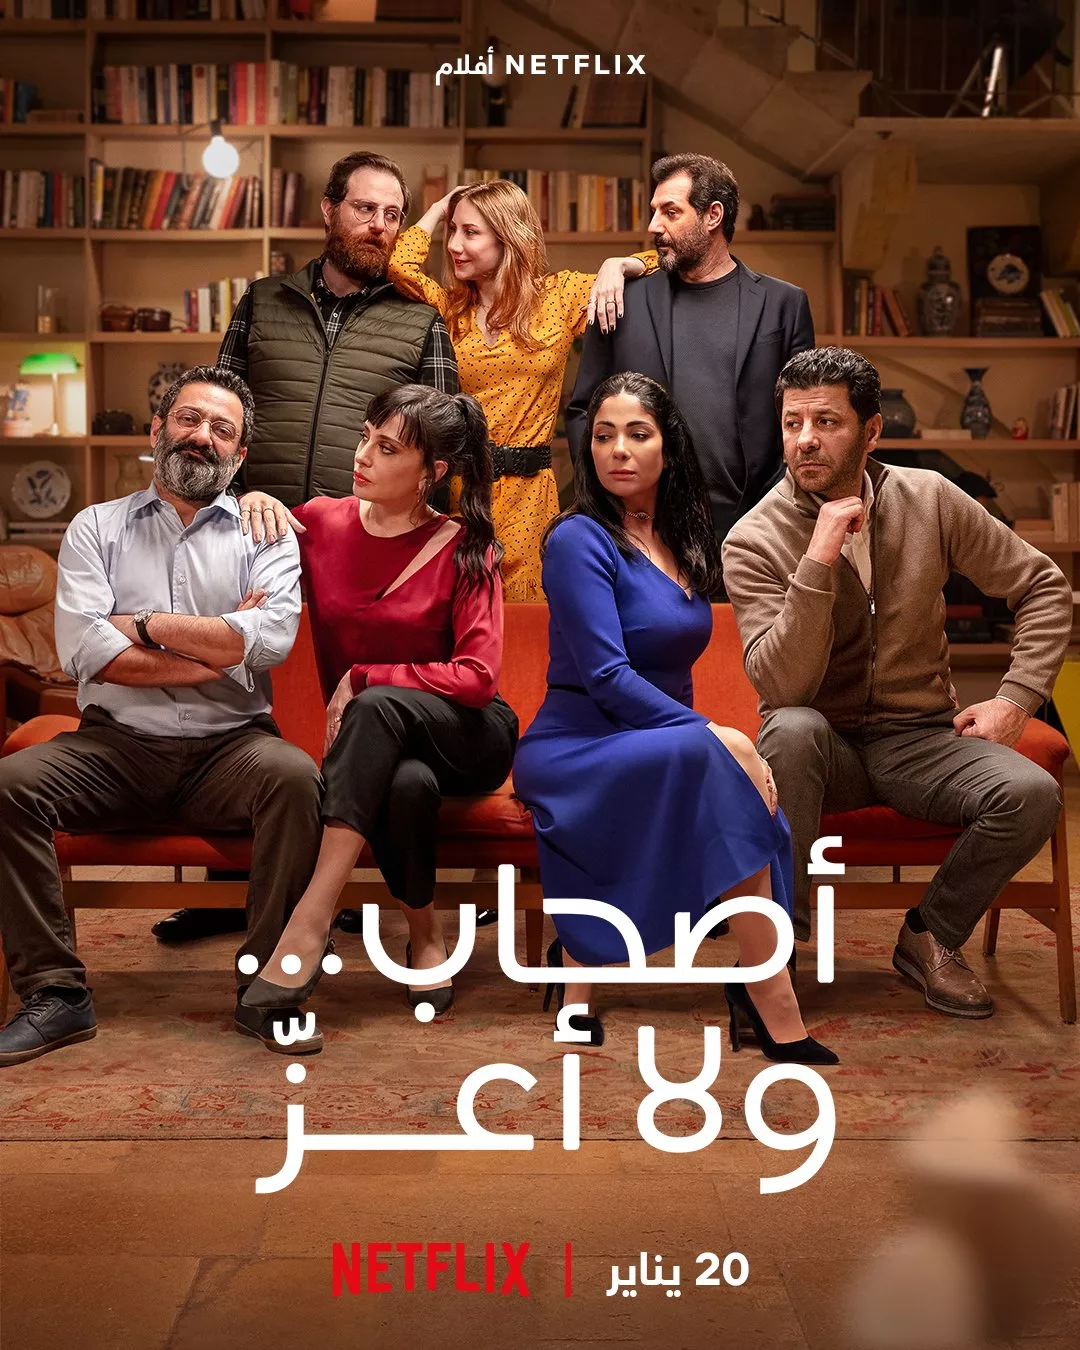 أصحاب ...ولا أعزّ: أول فيلم عربي من إنتاج نتفلكس، سيتم عرضه بدءً من 20 يناير 2022